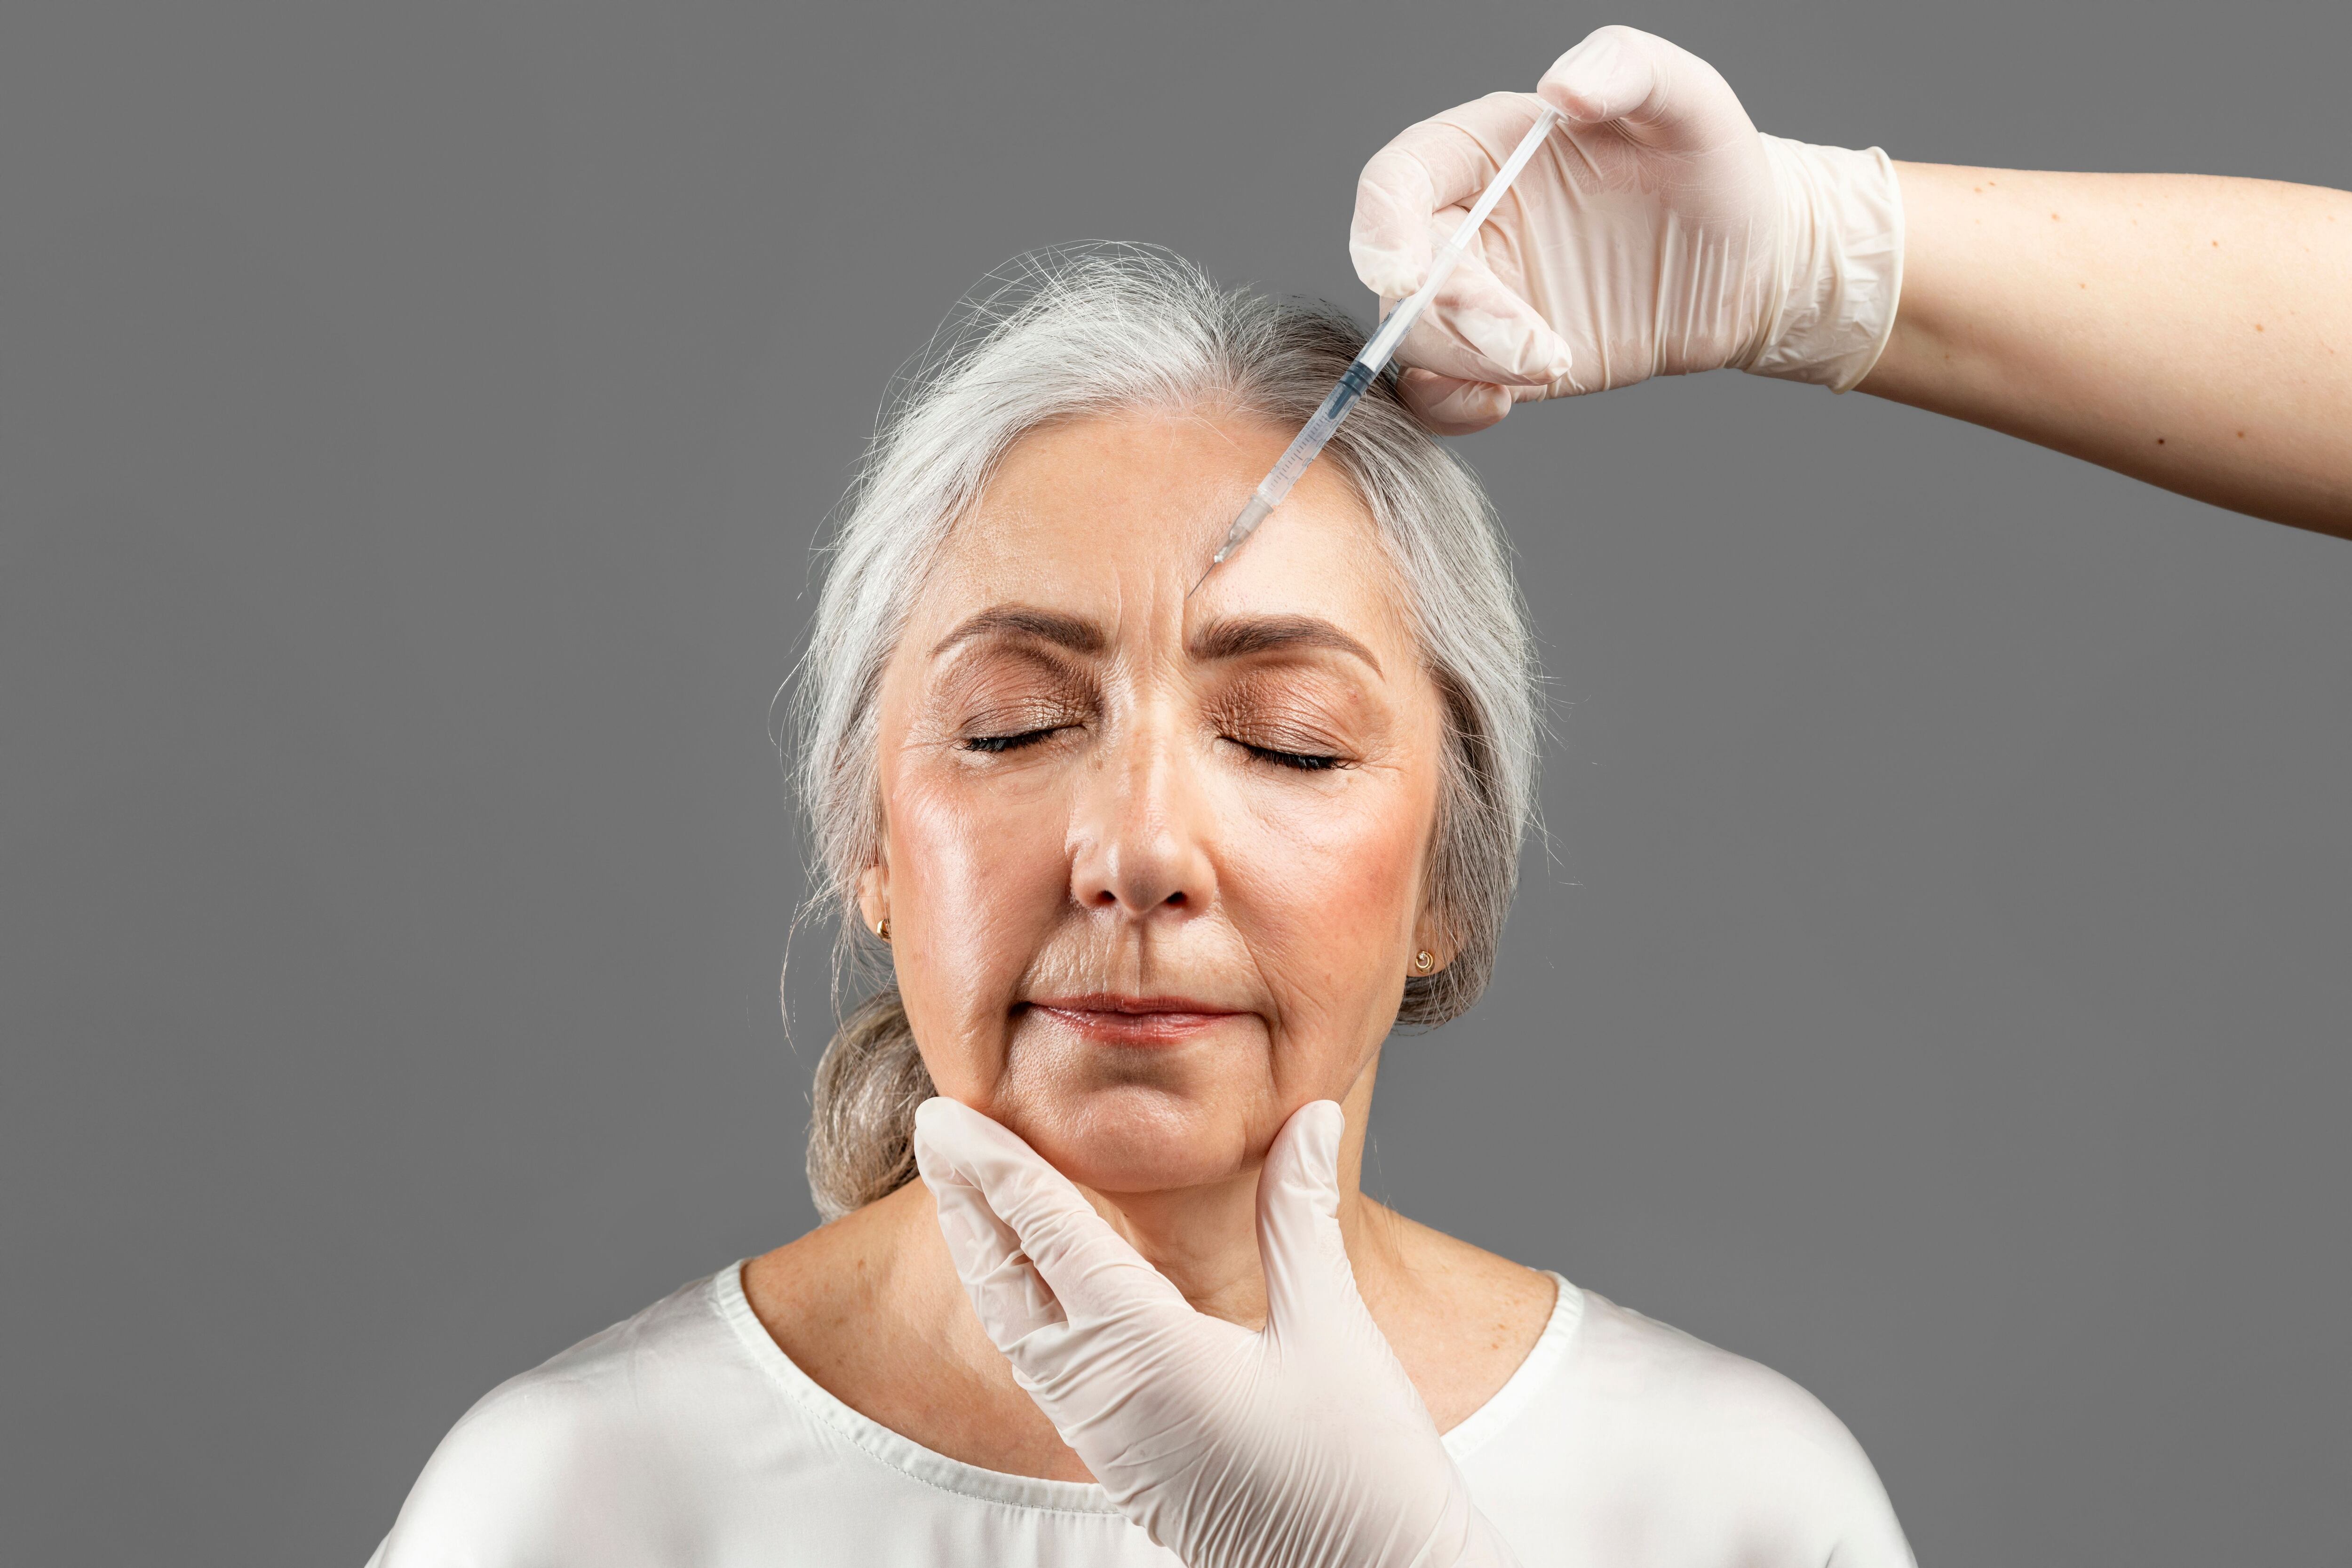 No hay edad para realizarse tratamientos por armonización facial, aunque especialistas recomiendan empezar a colocarse toxina botulínica preventiva desde los 23 años para retrasar el envejecimiento.